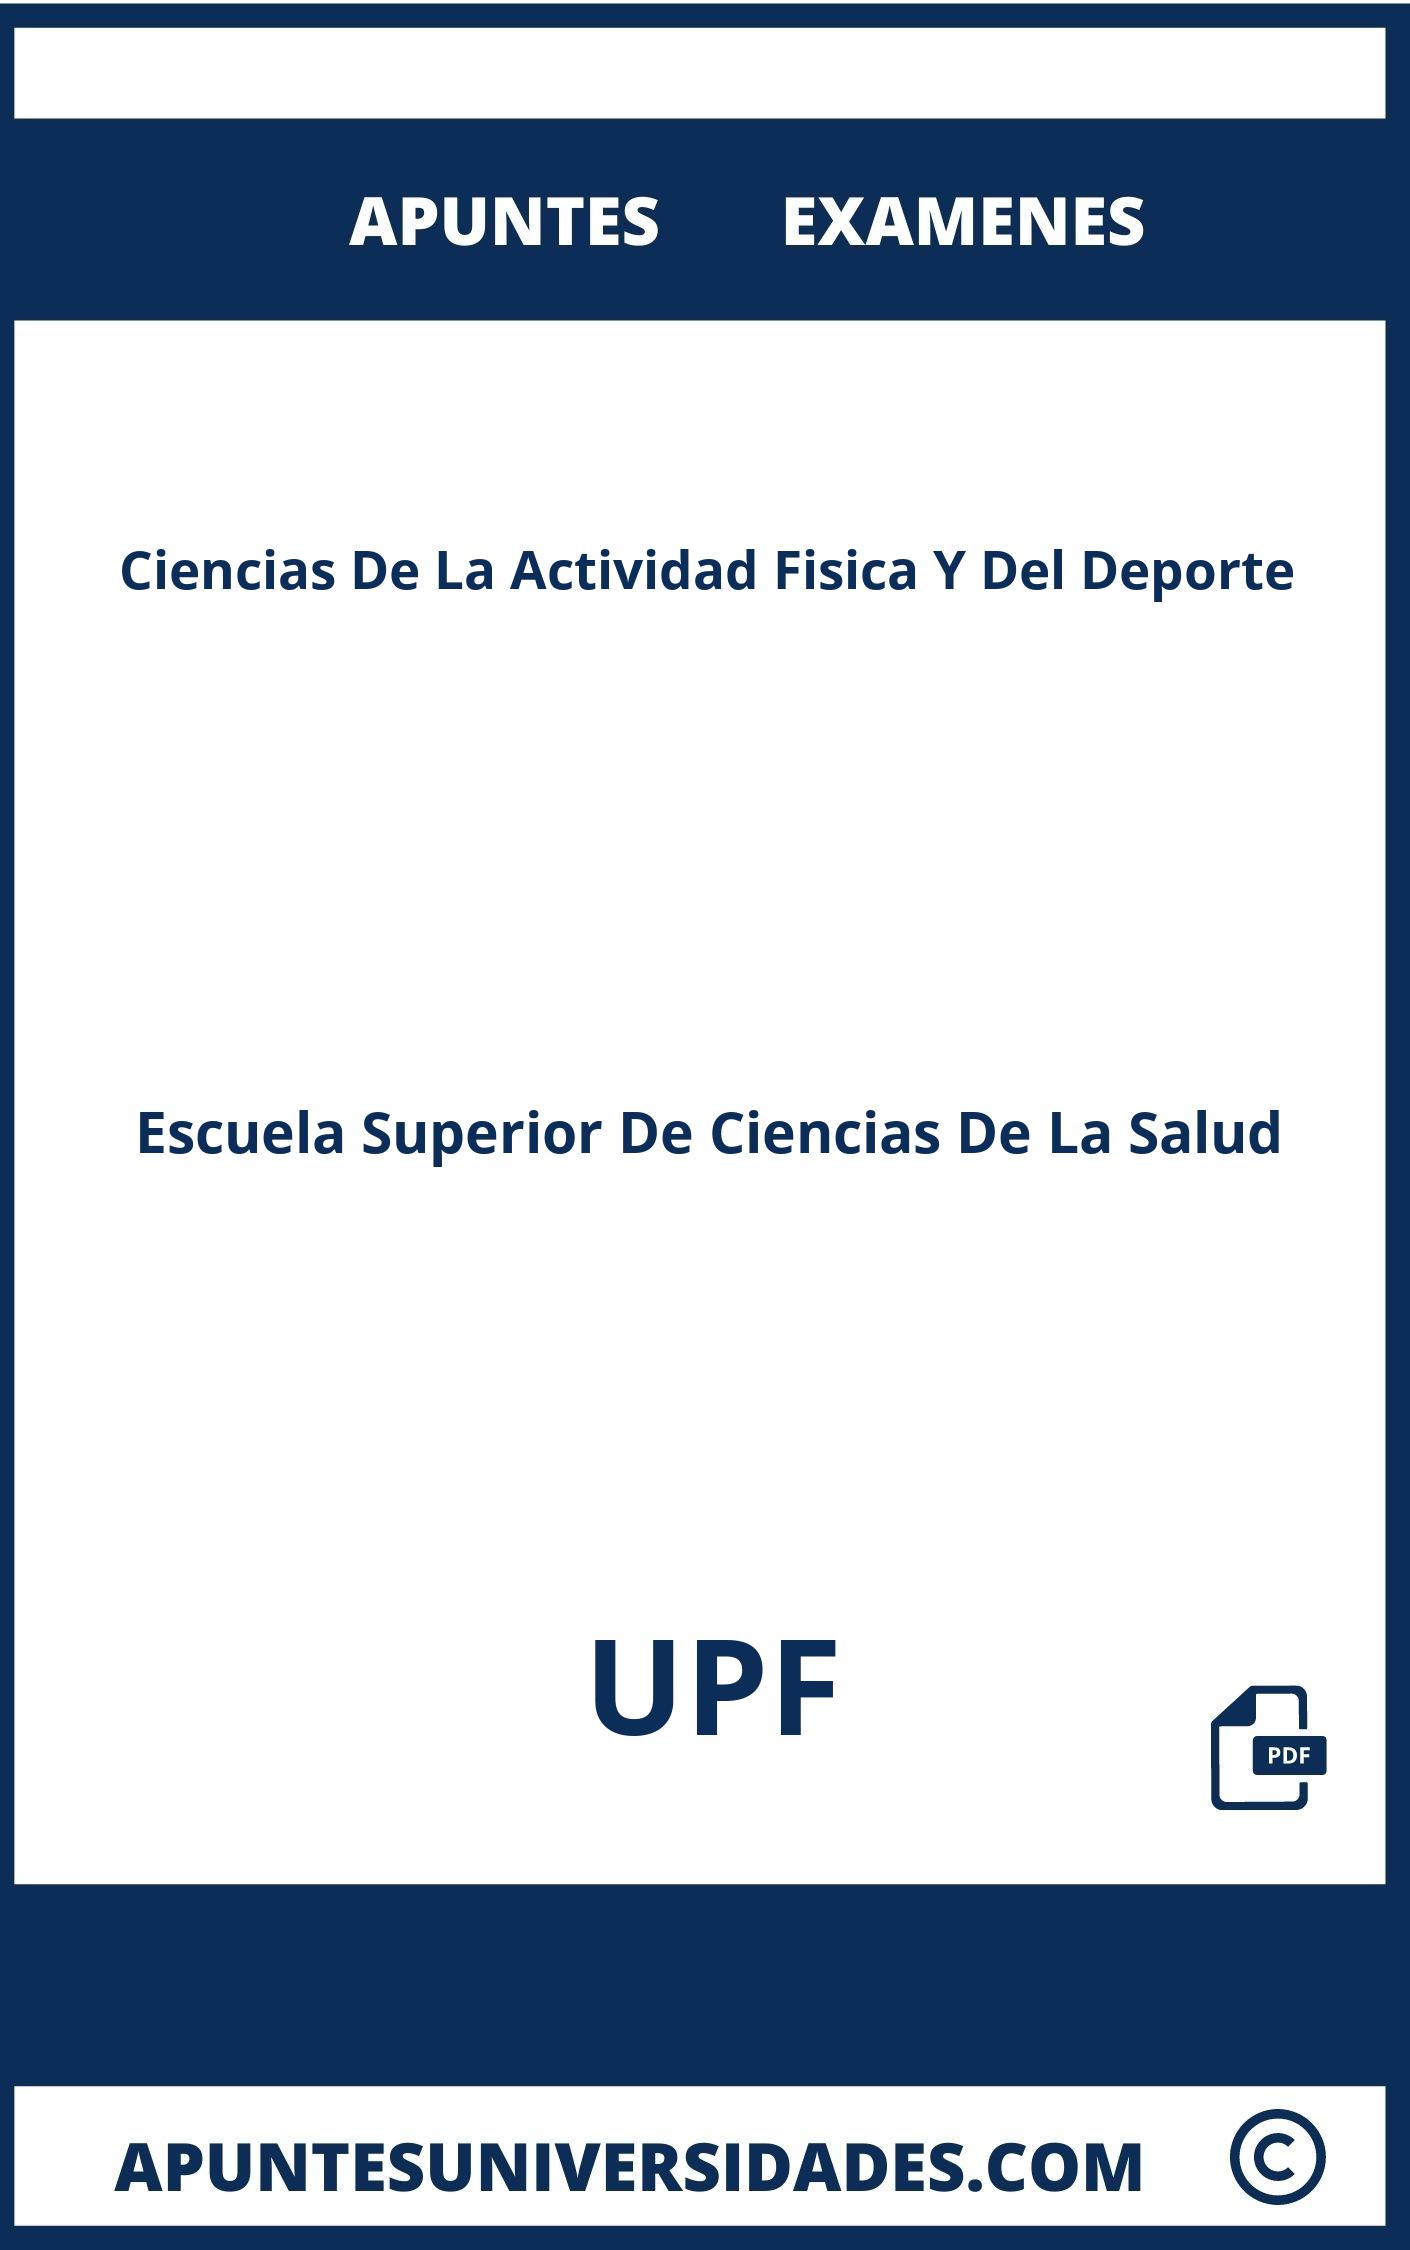 Apuntes Examenes Ciencias De La Actividad Fisica Y Del Deporte UPF